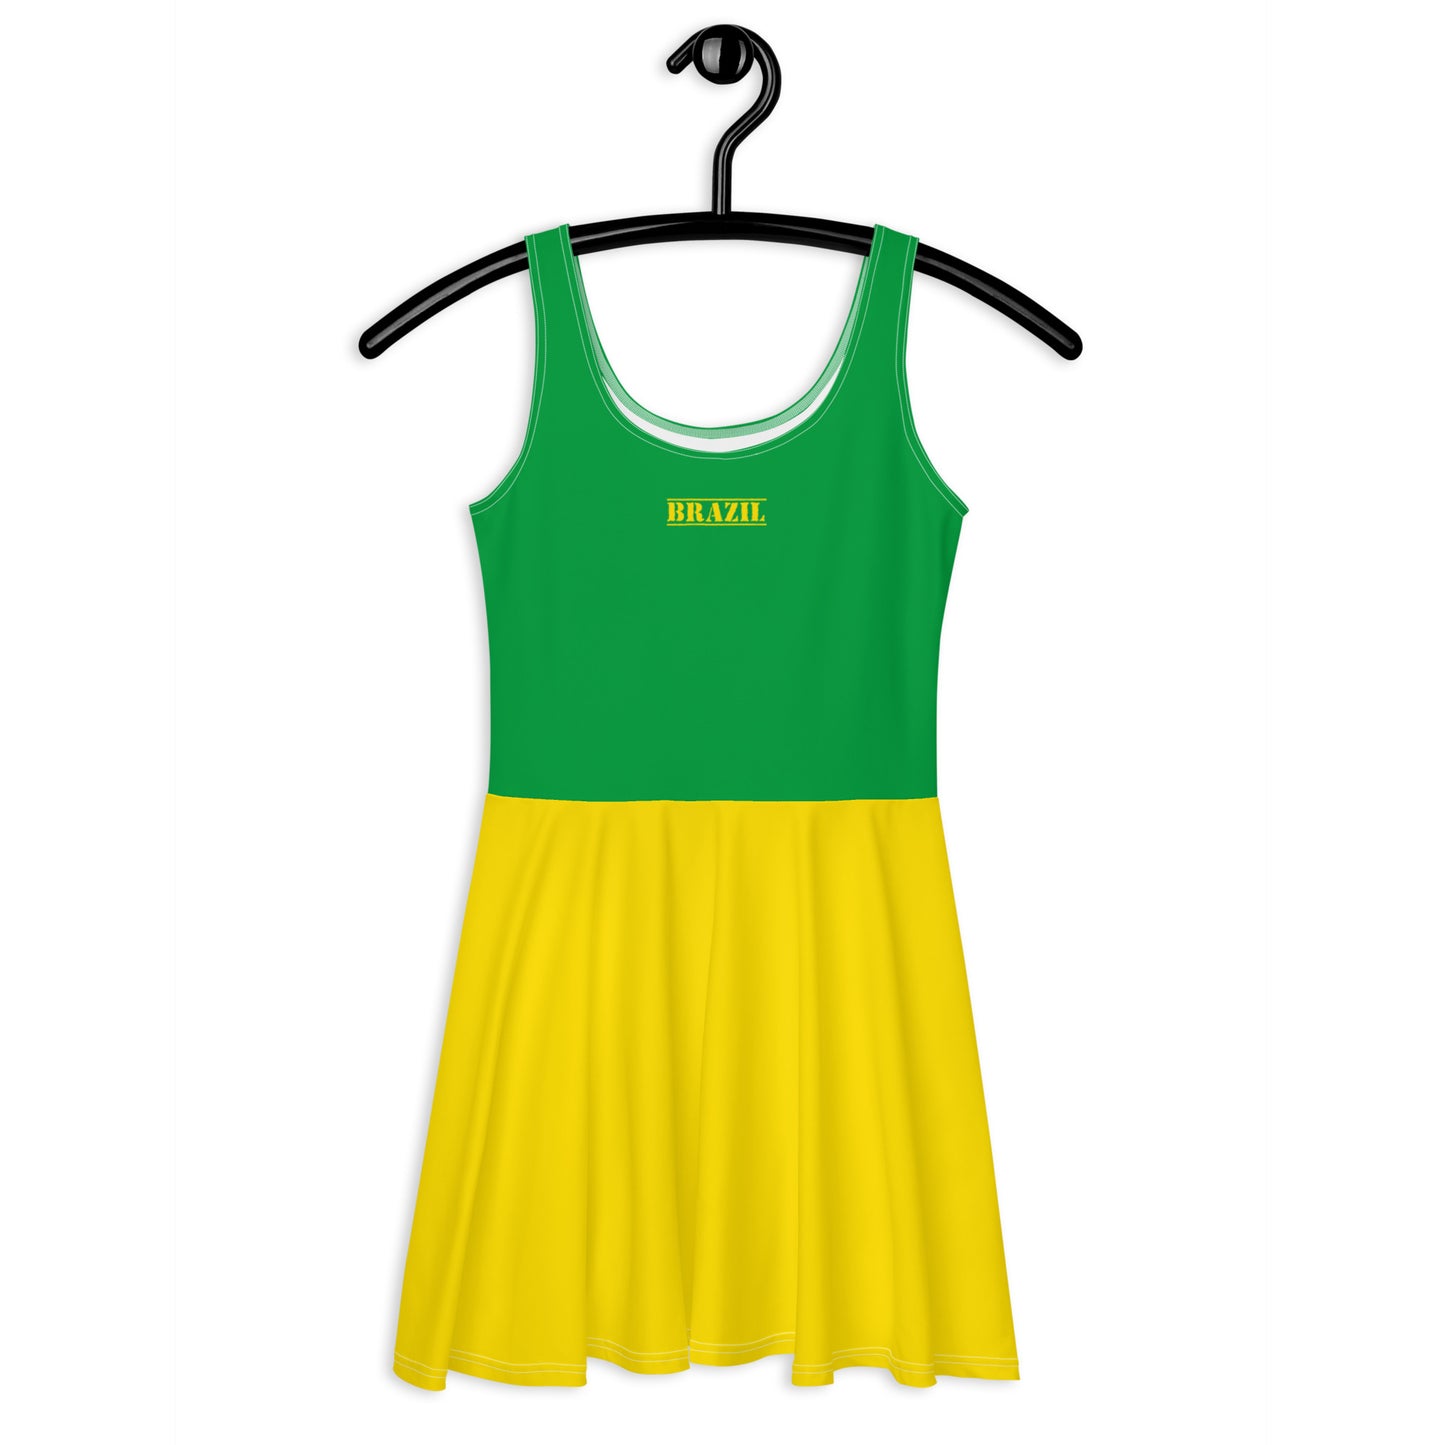 Brazil Flag Skater Dress / Skater Outfit For Brazil Lovers